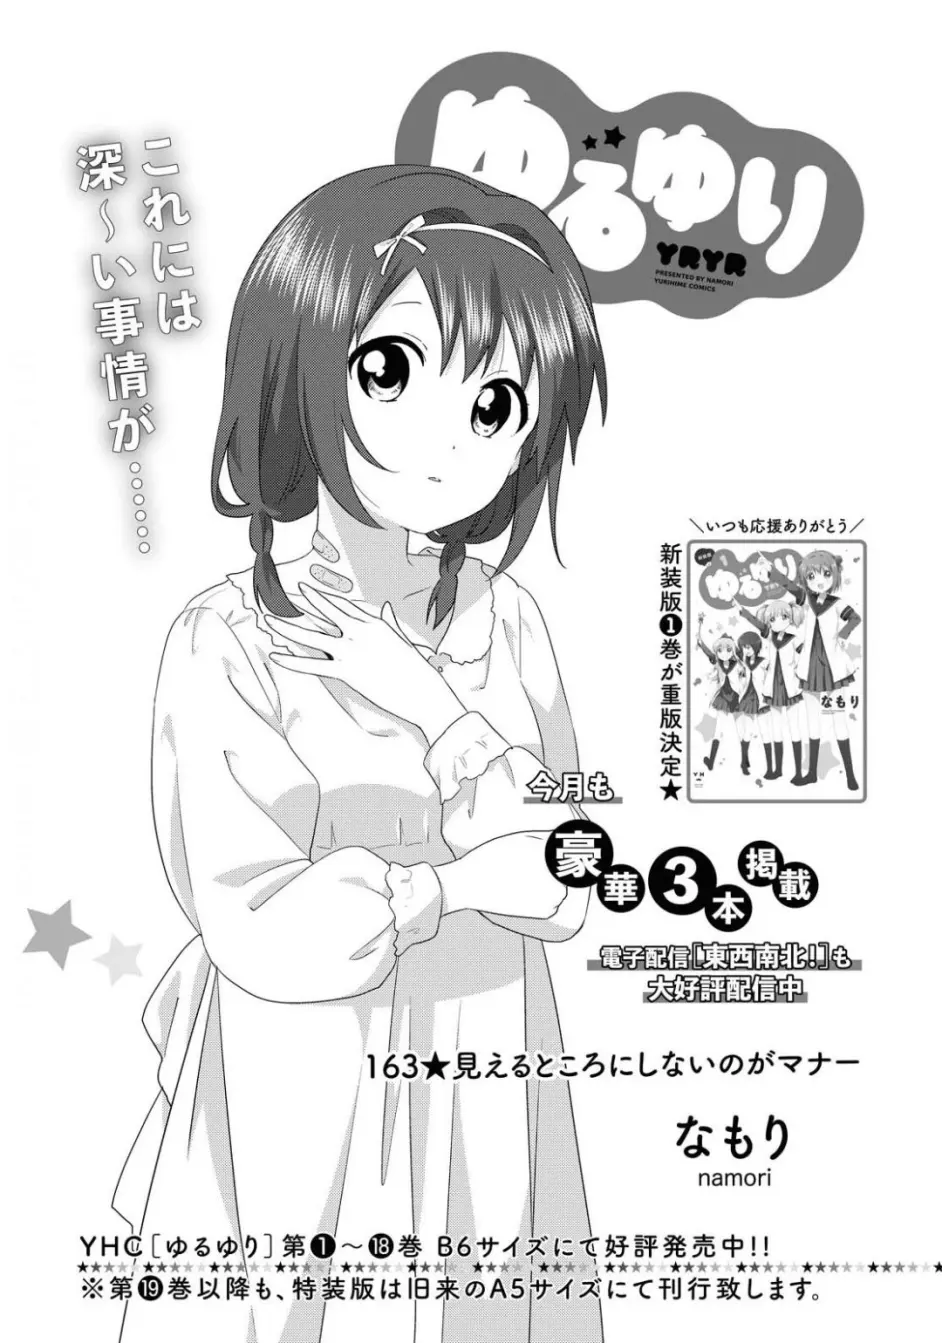 杂志 Yurihime年11月号漫画资料列表 哔哩哔哩